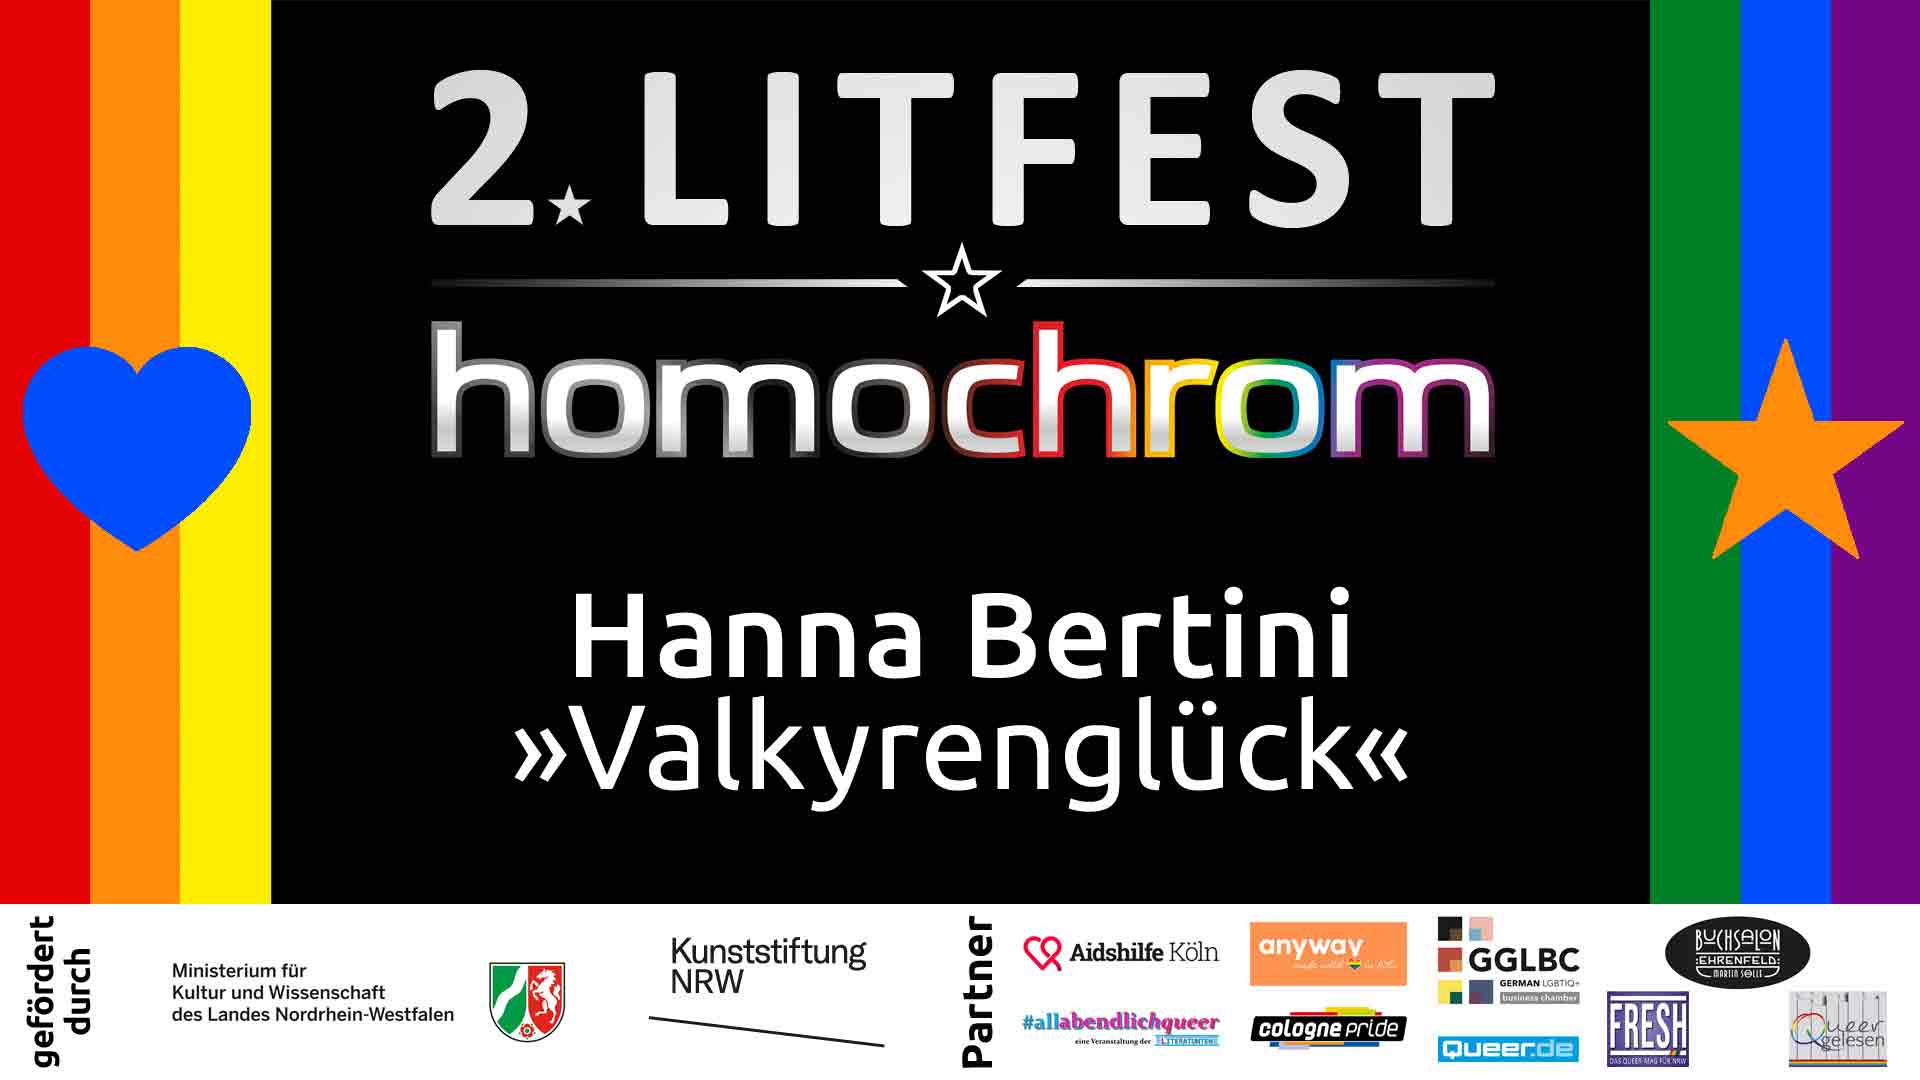 Youtube Video, Hanna Bertini, 2. Litfest homochrom